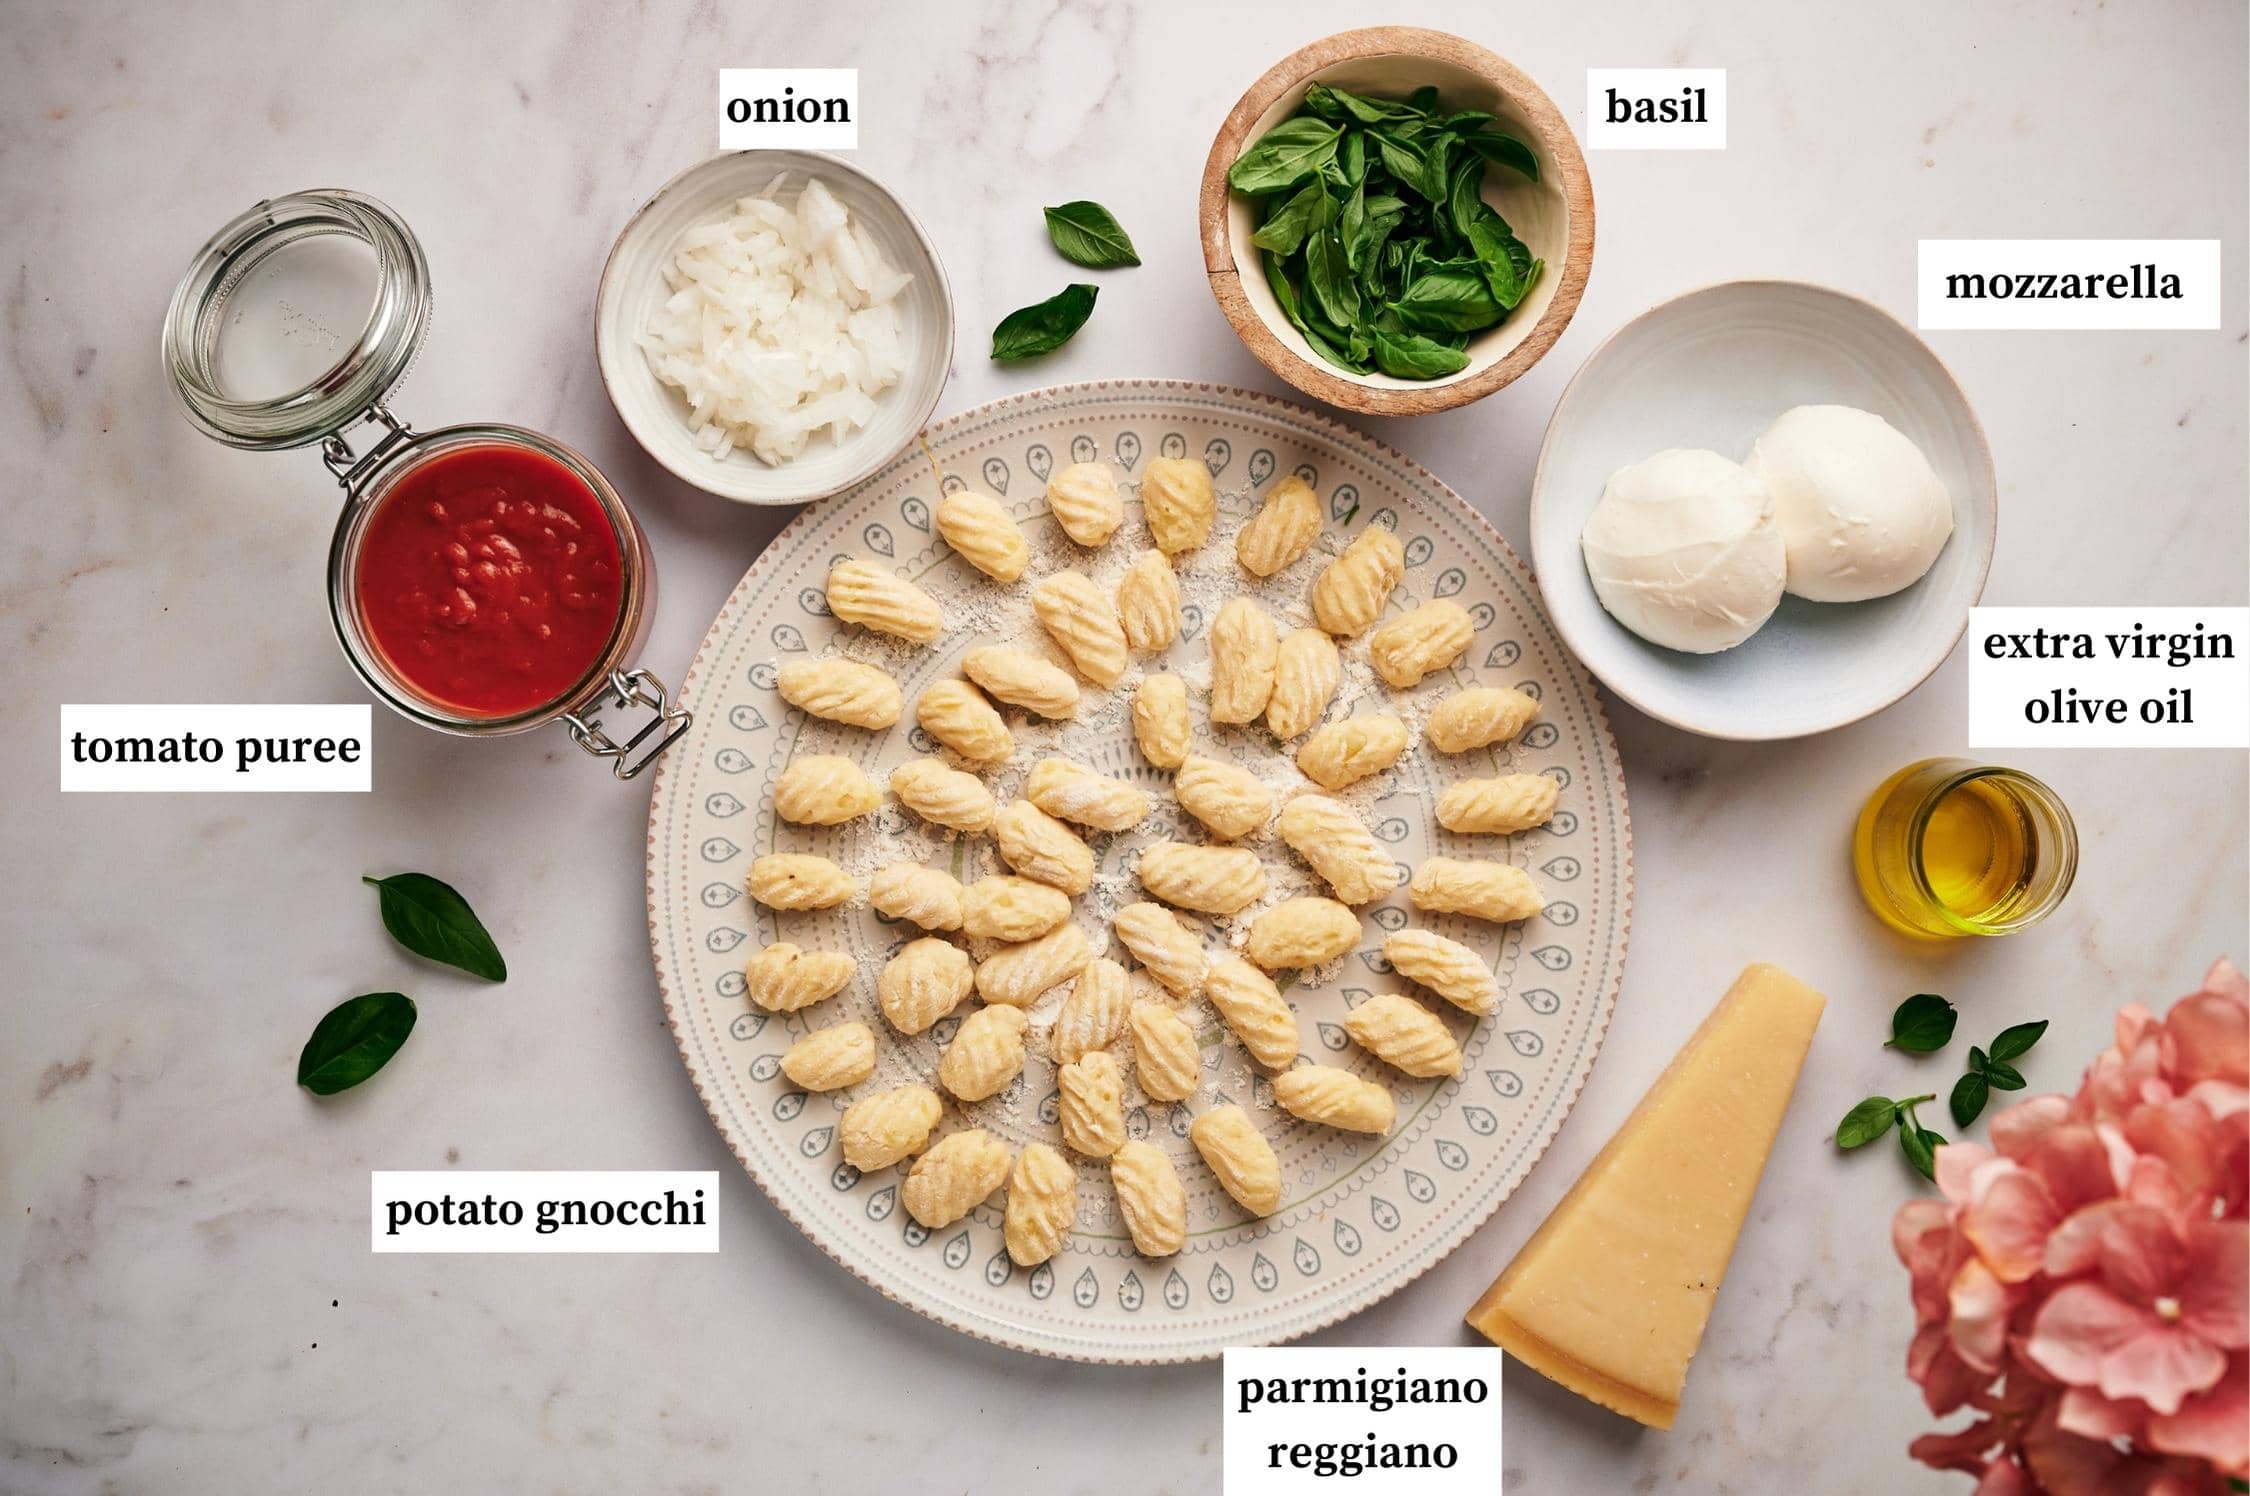 Ingredients for Gnocchi alla Sorrentina: tomato puree, onion, basil, mozzarella, extra virgin olive oil, potato gnocchi.